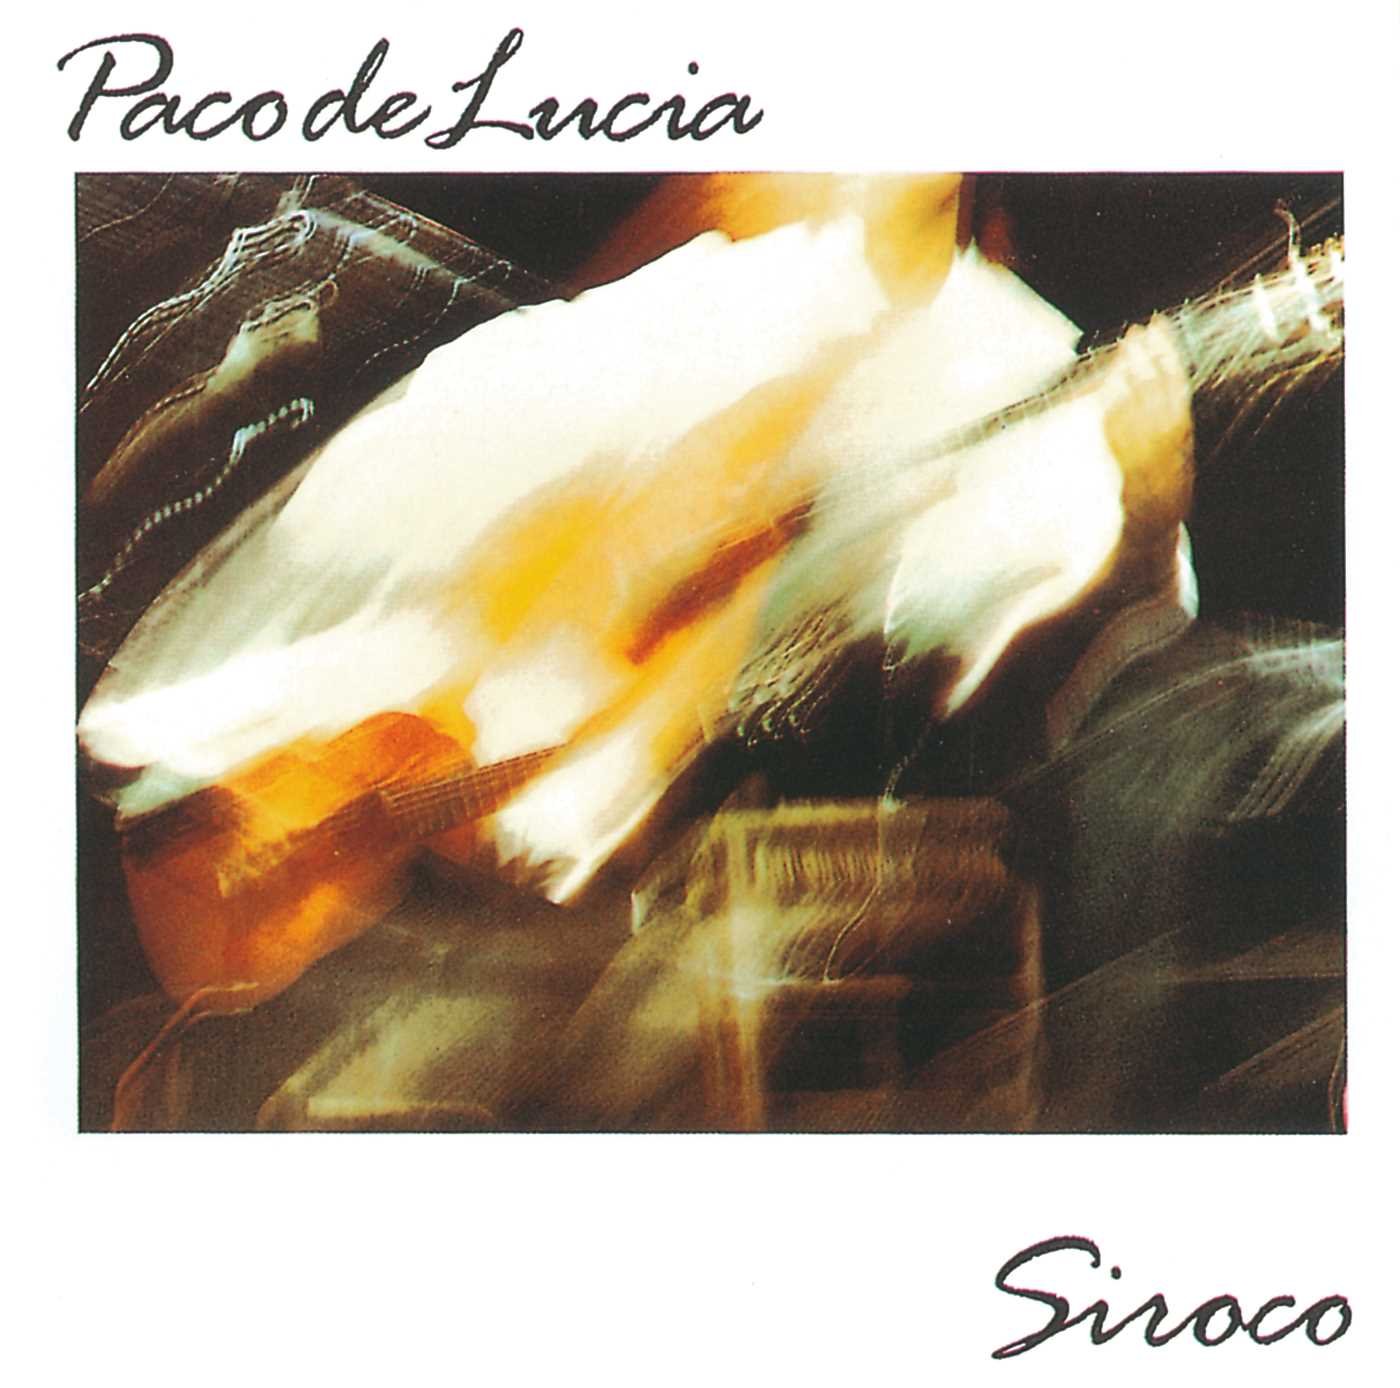 Paco de Lucía "Siroco" LP